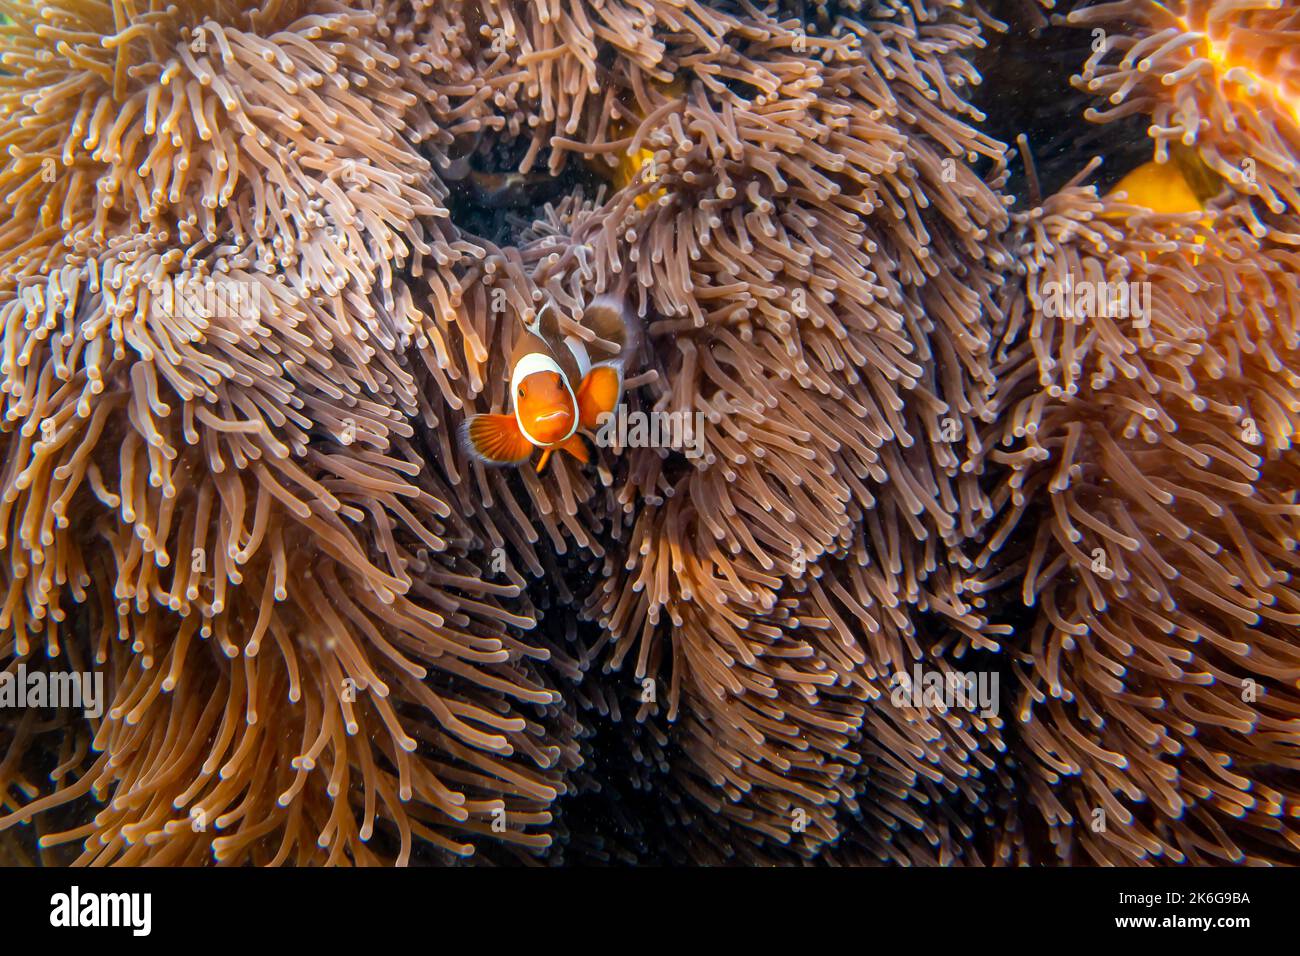 Il pesce pagliaccio (nome latino Amphiprion ocellaris) vicino alla barriera corallina in mare, a Ko Lipe isola, Thailandia. Il pesce vive in relazione simbiotica con l'ano Foto Stock